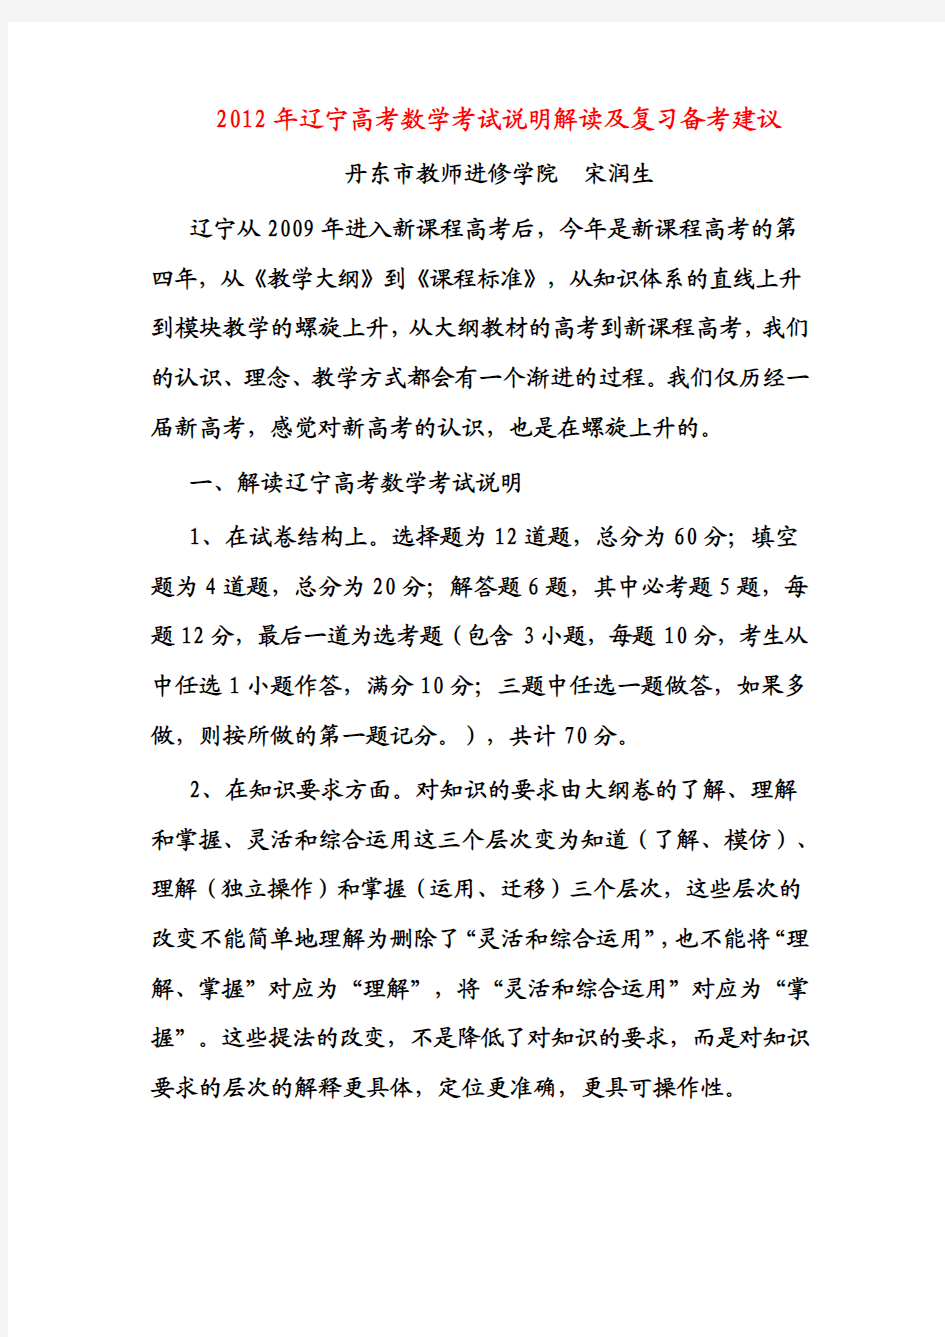 2012年辽宁高考数学考试说明解读及复习备考建议